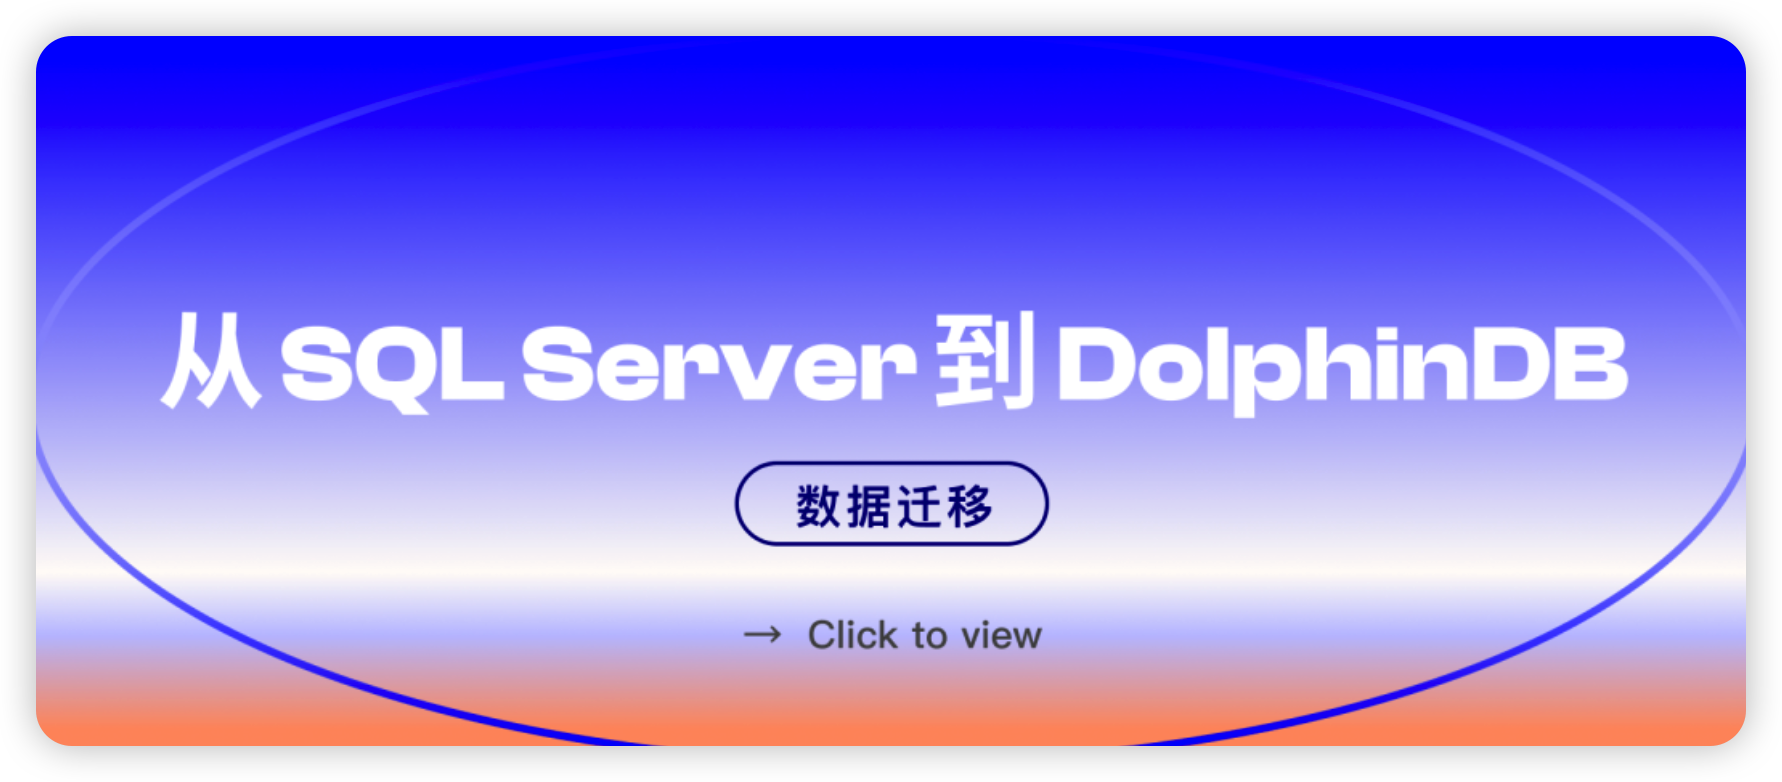 如何高效迁移 SQL Server 数据到 DolphinDB